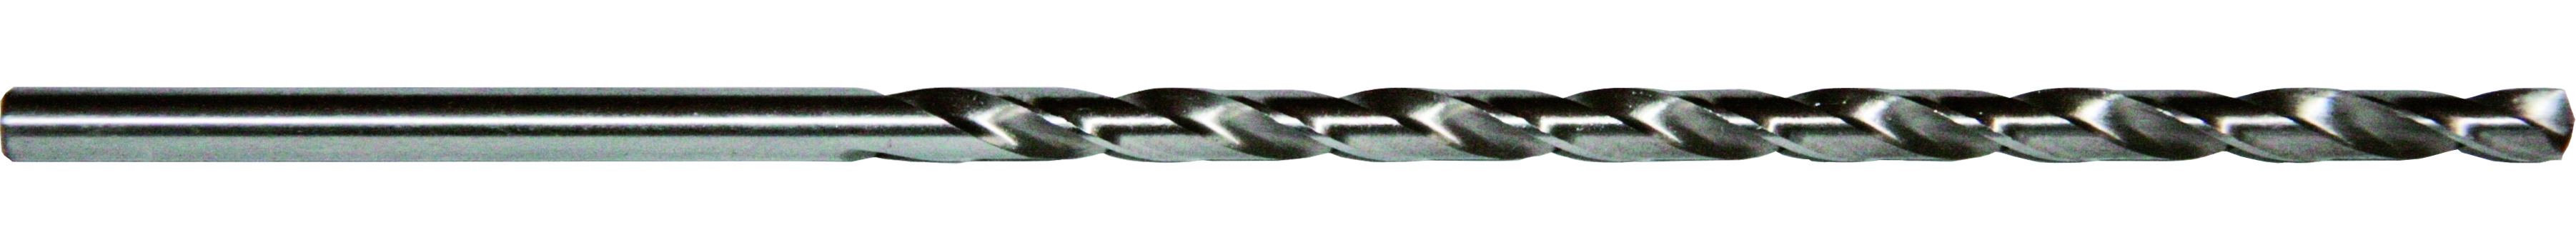 Spiralbohrer HSS G DIN 1869 2,0-13,0mm Metallbohrer extra lang Reihe 2 Angebot 